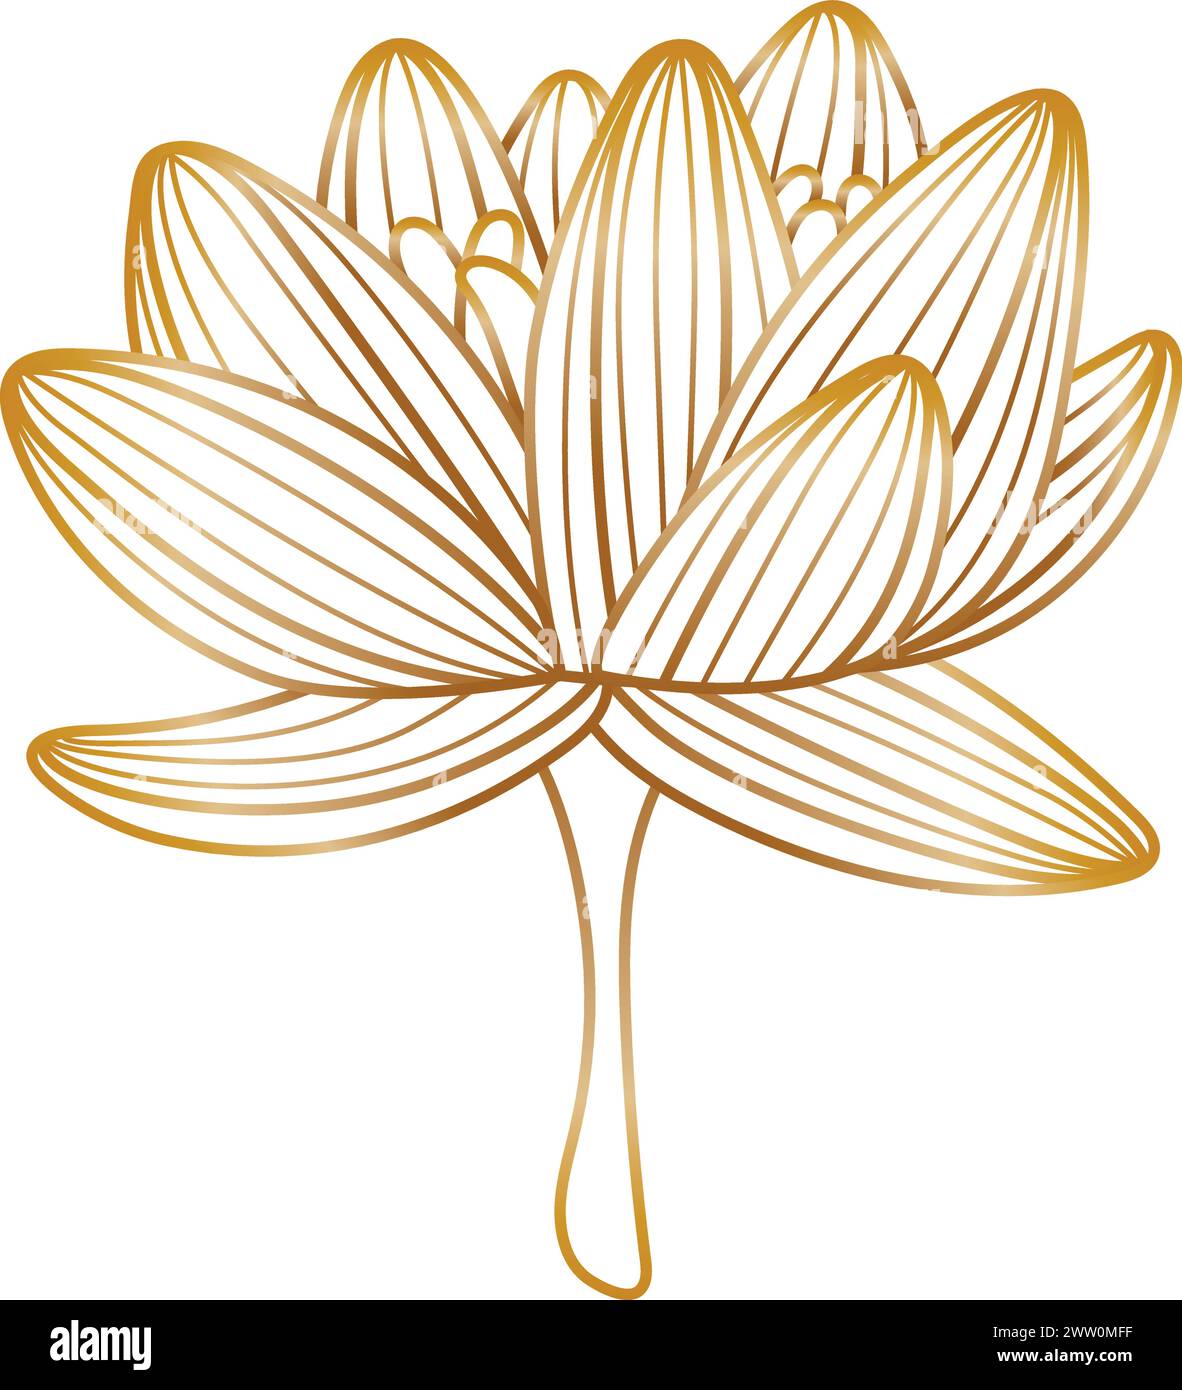 Fiore di loto dorato con texture lineare. Elemento floreale decorativo Illustrazione Vettoriale